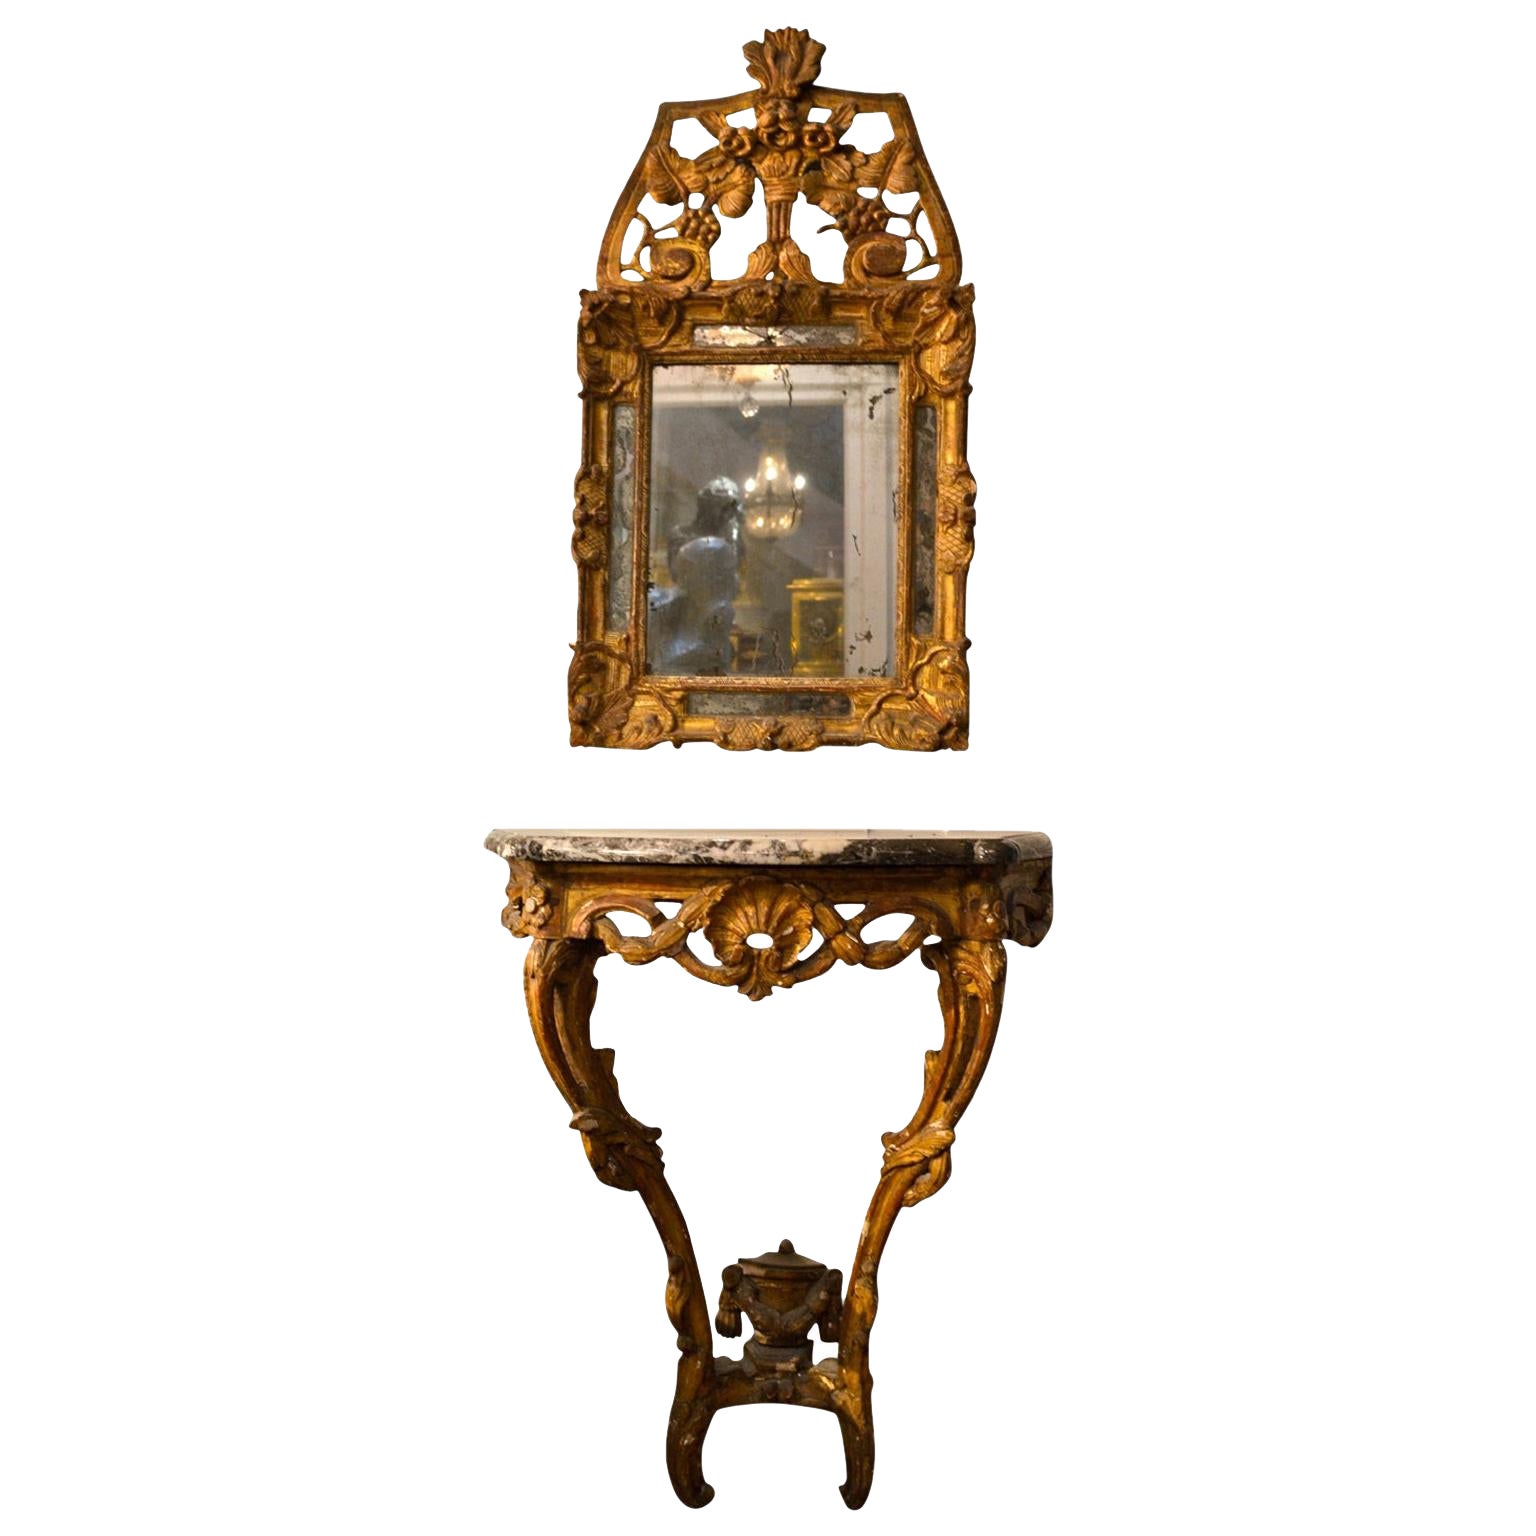 Console et miroir d'époque Louis XV du 18ème siècle en bois doré sculpté